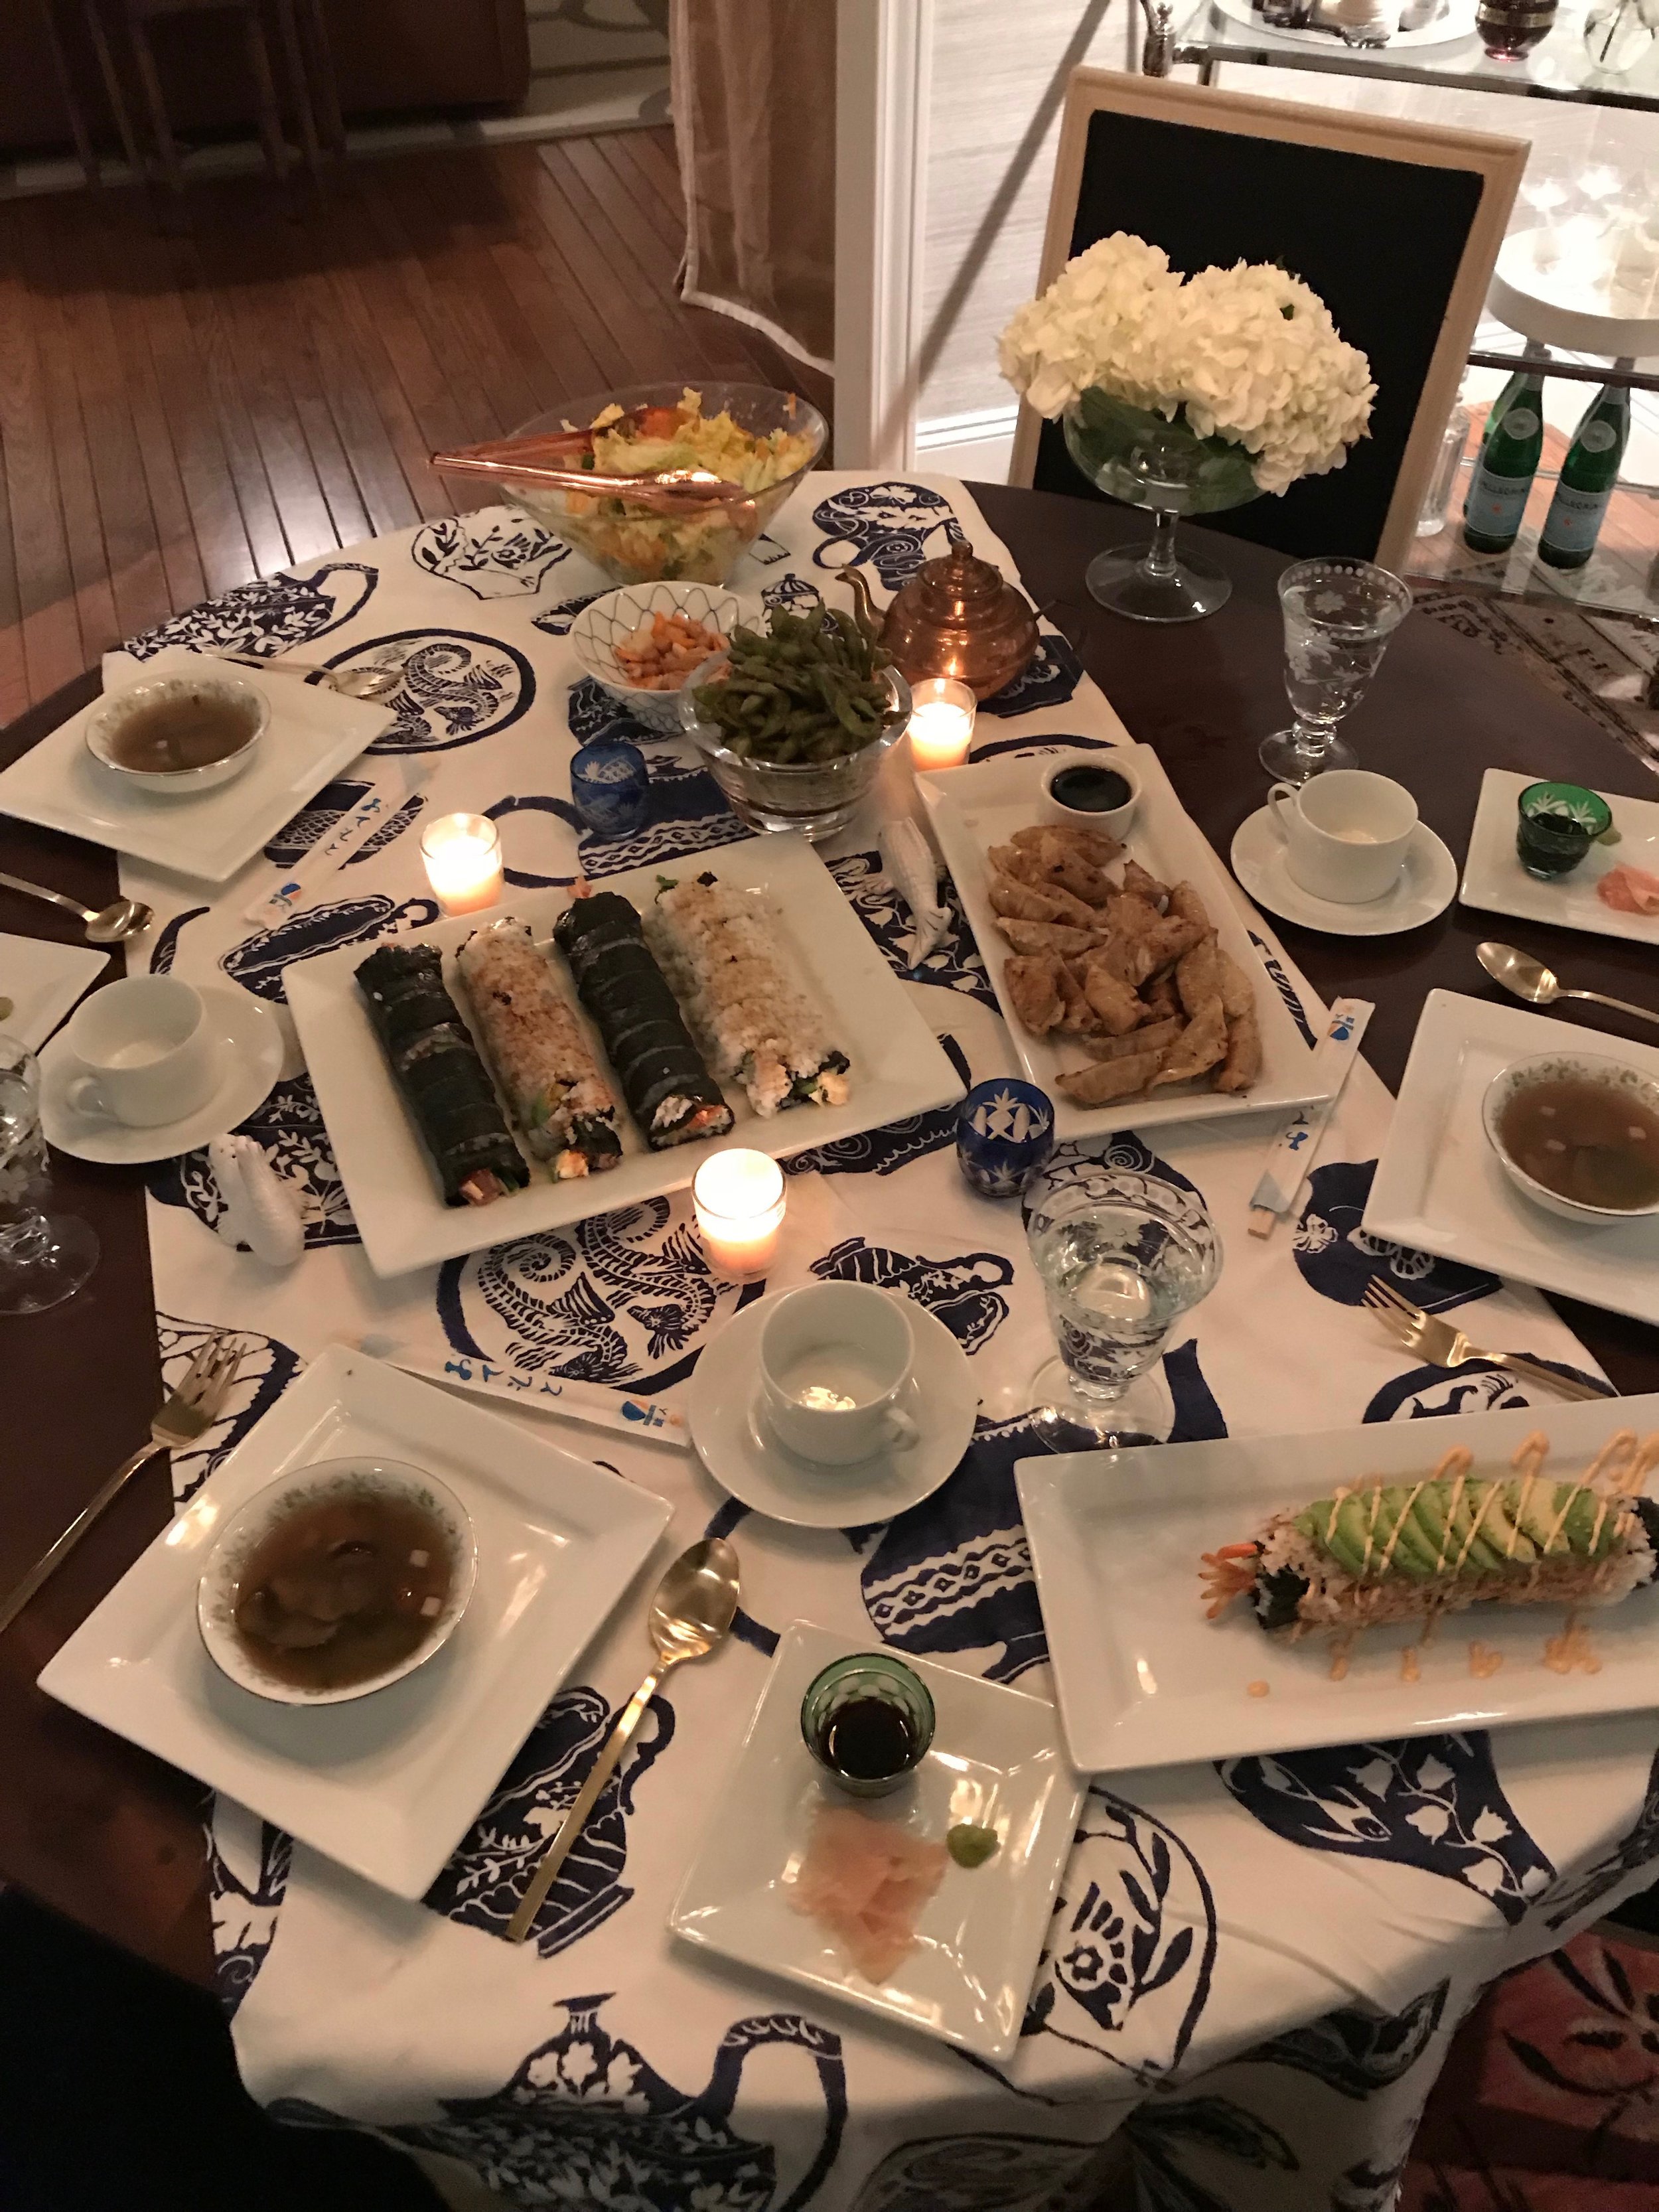 A happy sushi night!